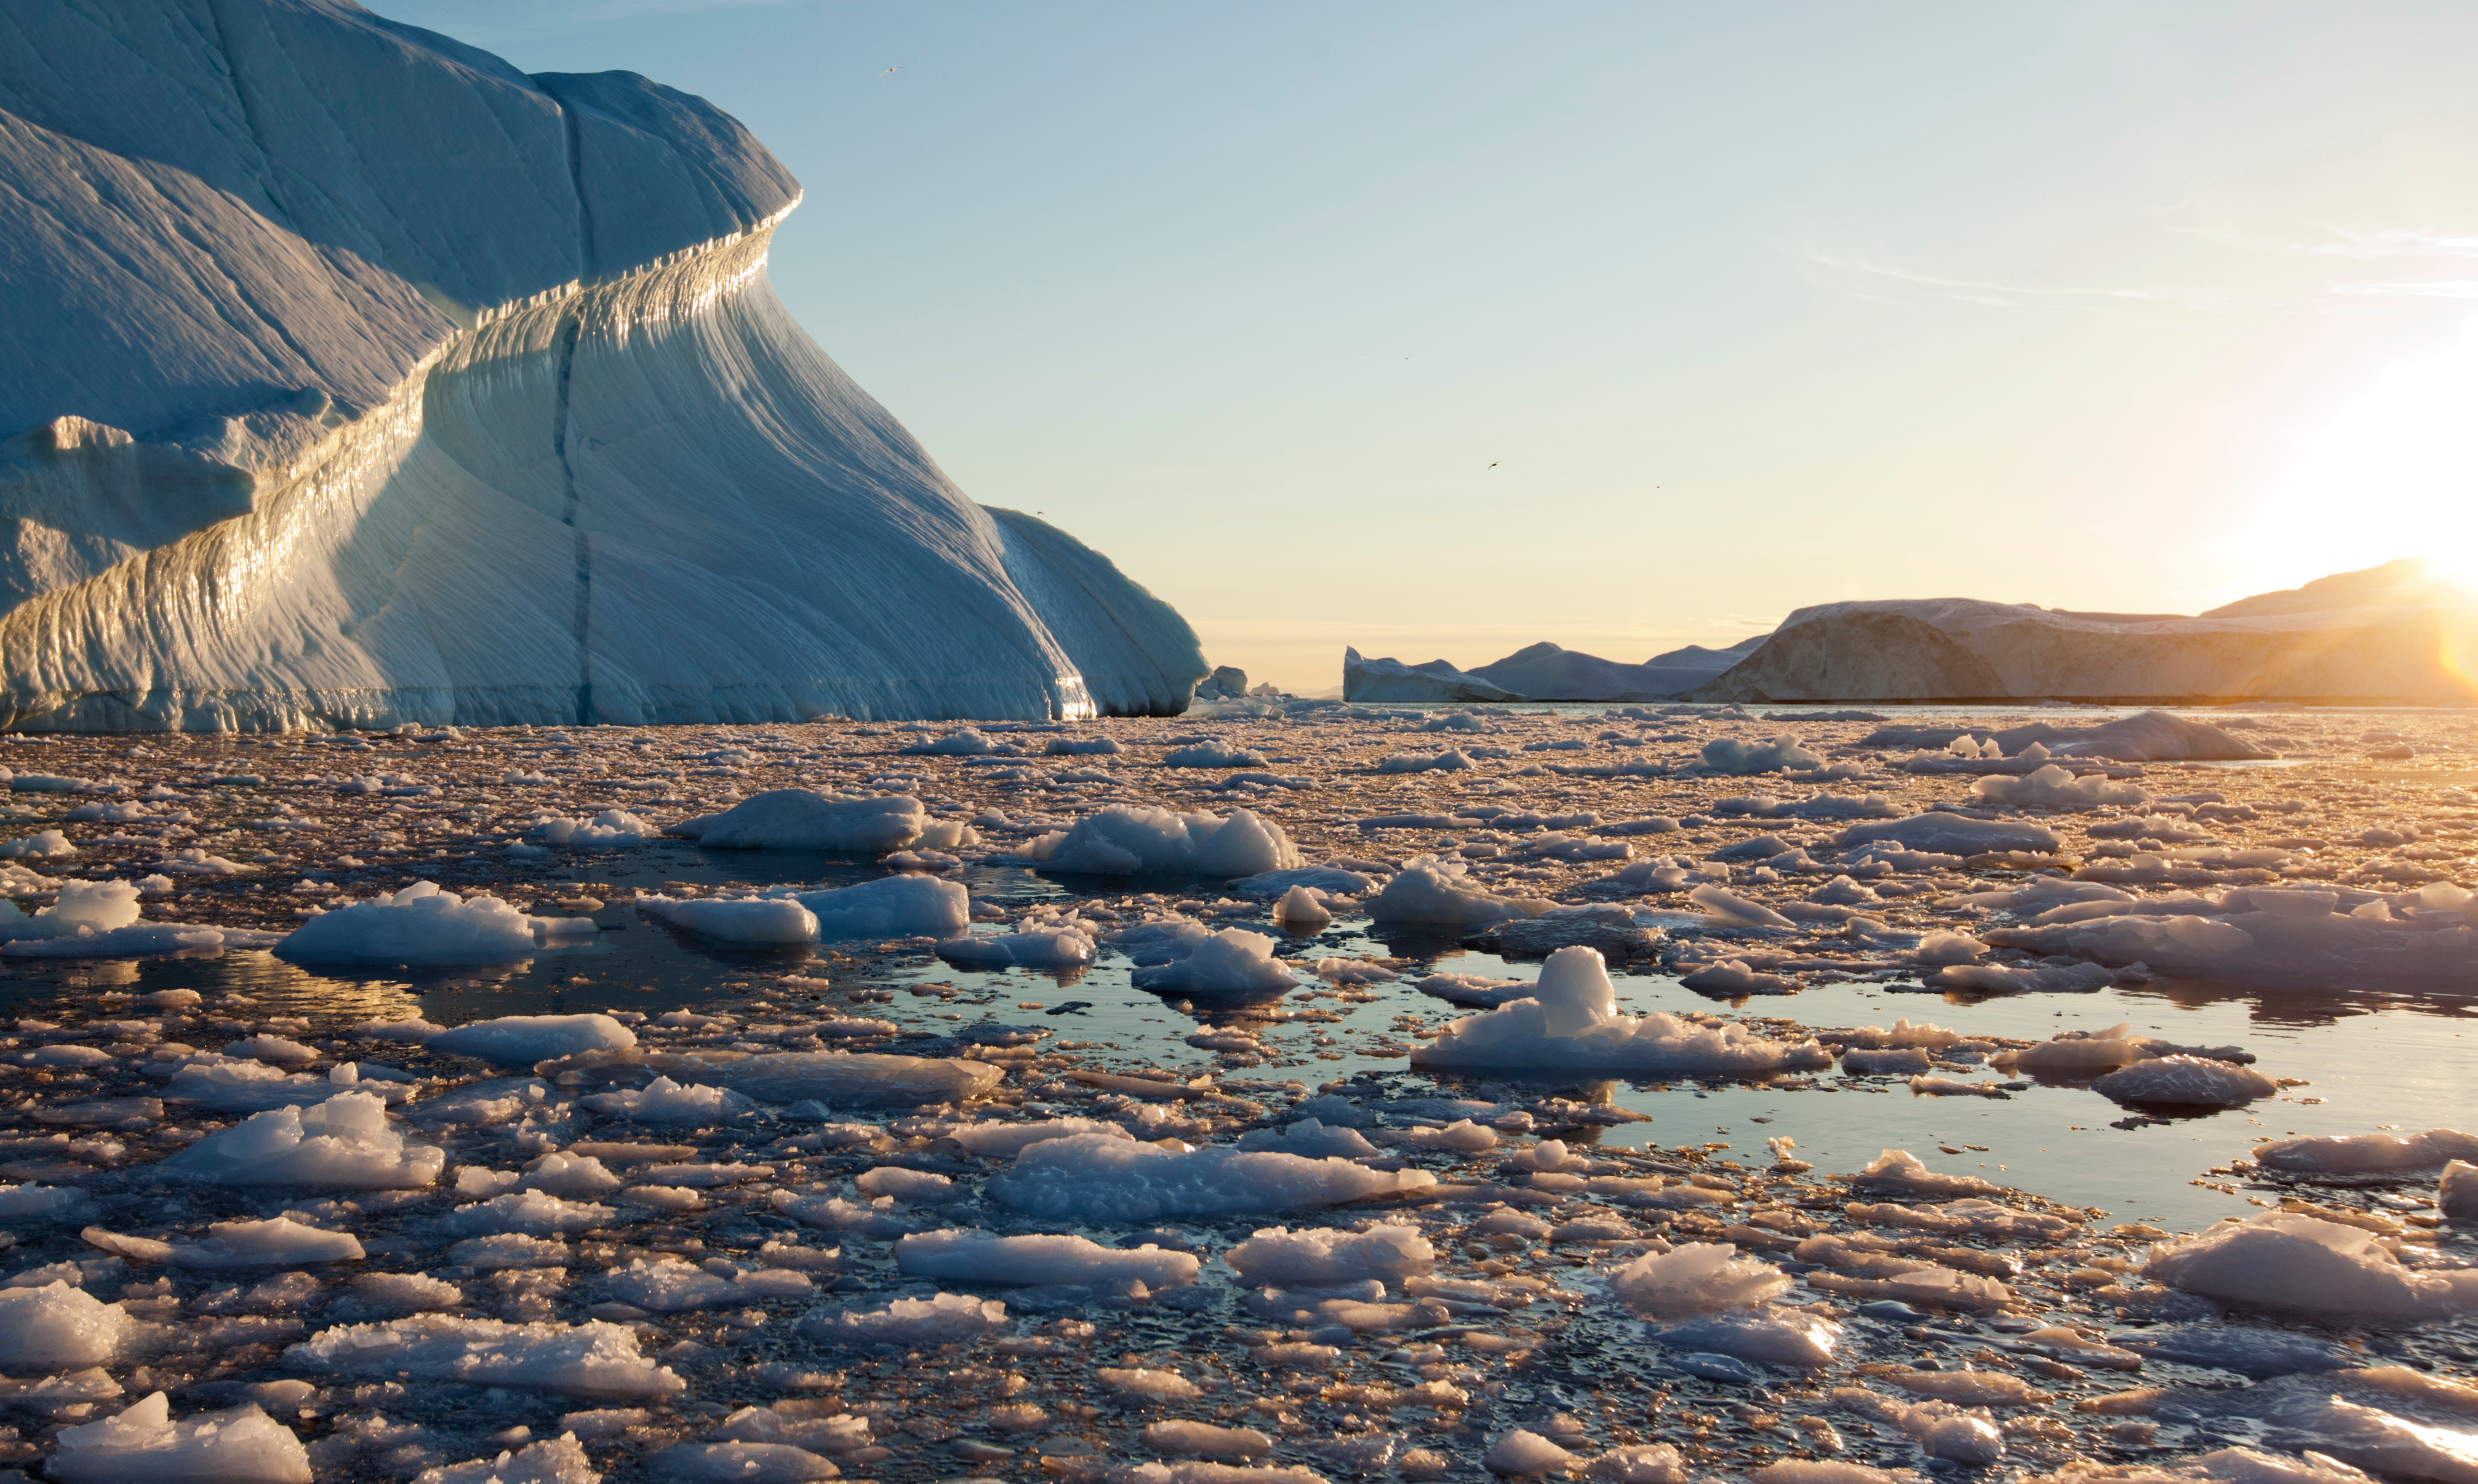 Des chercheurs de l’université de Newcastle (Royaume-Uni) ont recueilli de nouvelles données qui laissent penser que les calottes glaciaires pourraient connaître des épisodes d’effondrement rapide sous l’effet du réchauffement climatique. En images, la baie de Disko, au Groenland. © Paul, Adobe Stock